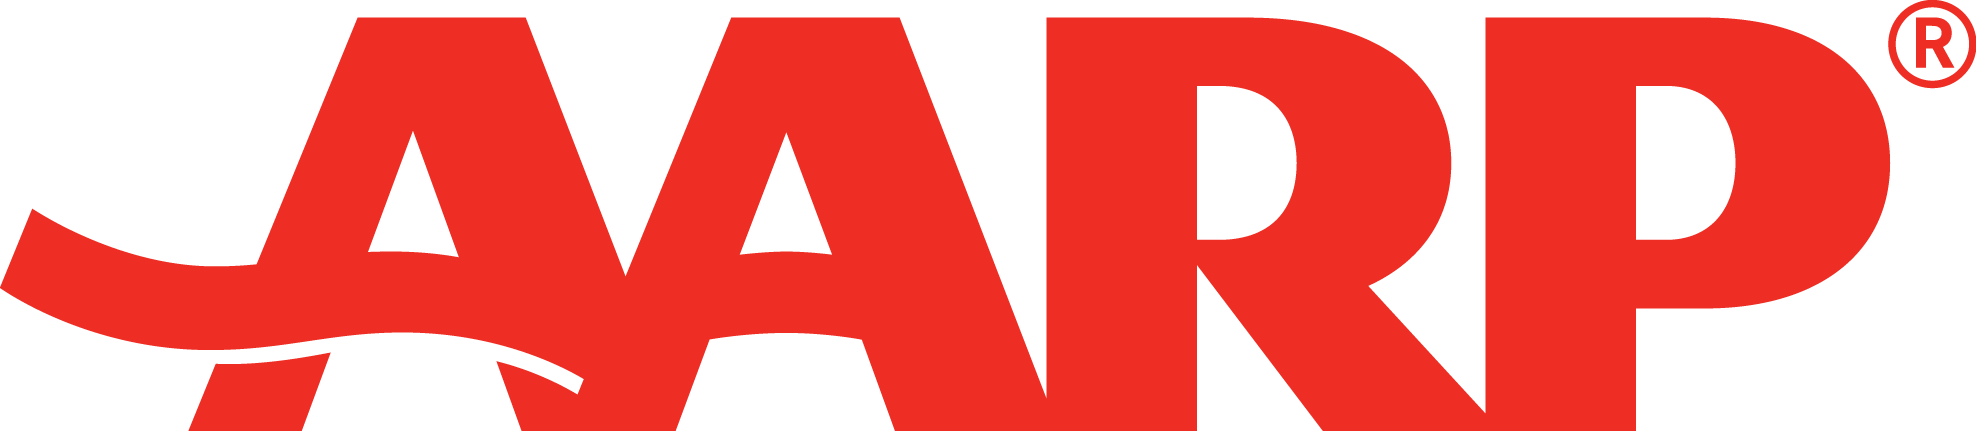 AARP-Logo.png